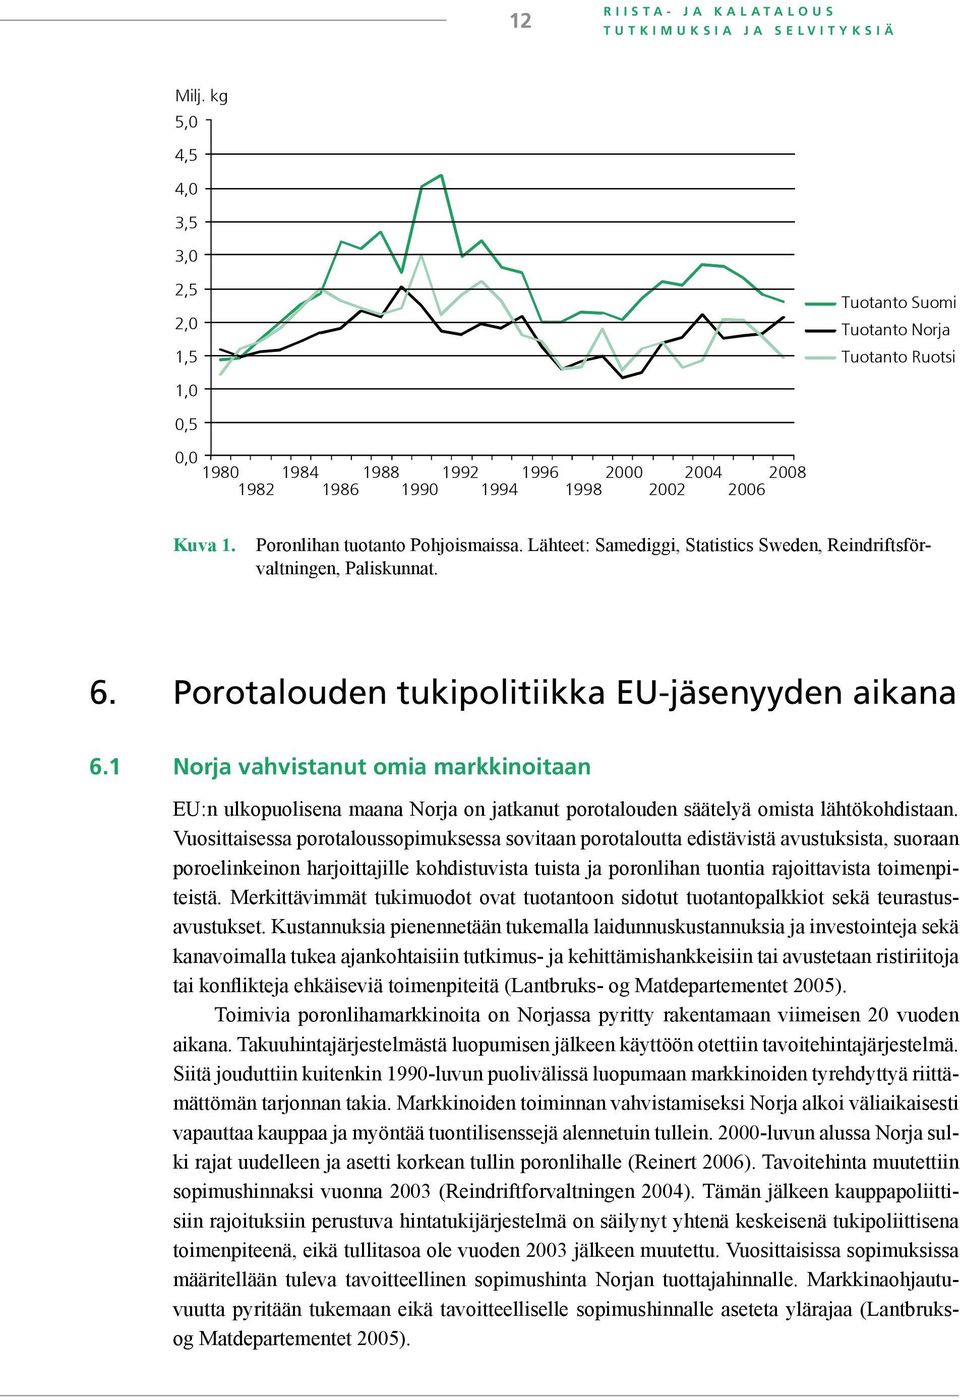 Poronlihan tuotanto Pohjoismaissa. Lähteet: Samediggi, Statistics Sweden, Reindriftsförvaltningen, Paliskunnat. 6. Porotalouden tukipolitiikka EU-jäsenyyden aikana 6.